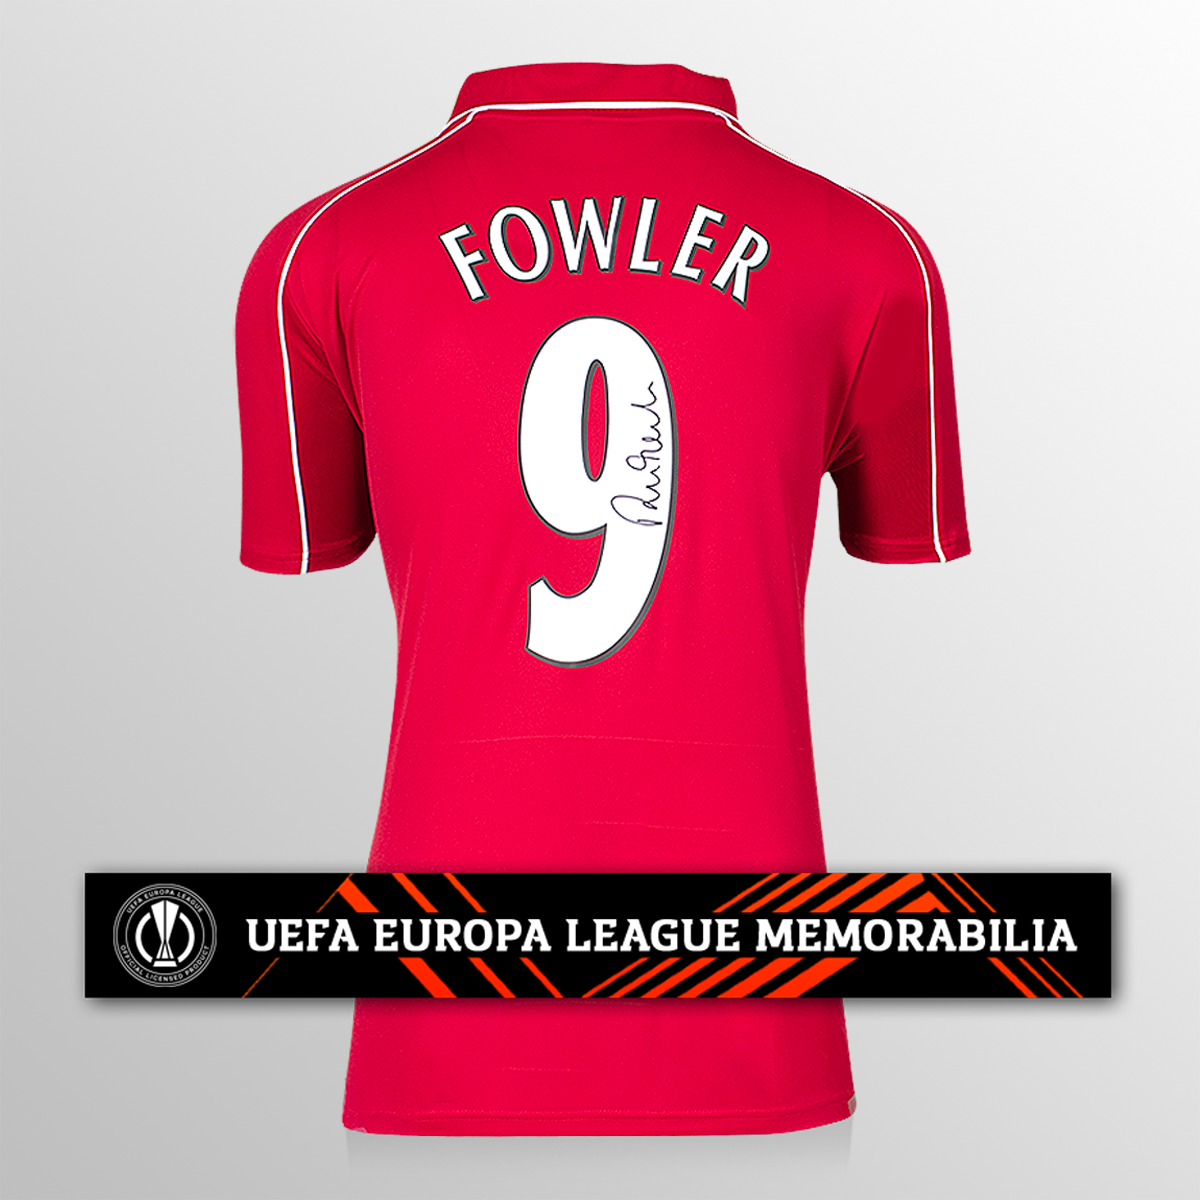 Robbie Fowler officielle UEFA Europa League en arrière a signé la chemise à domicile de Liverpool 2000-01